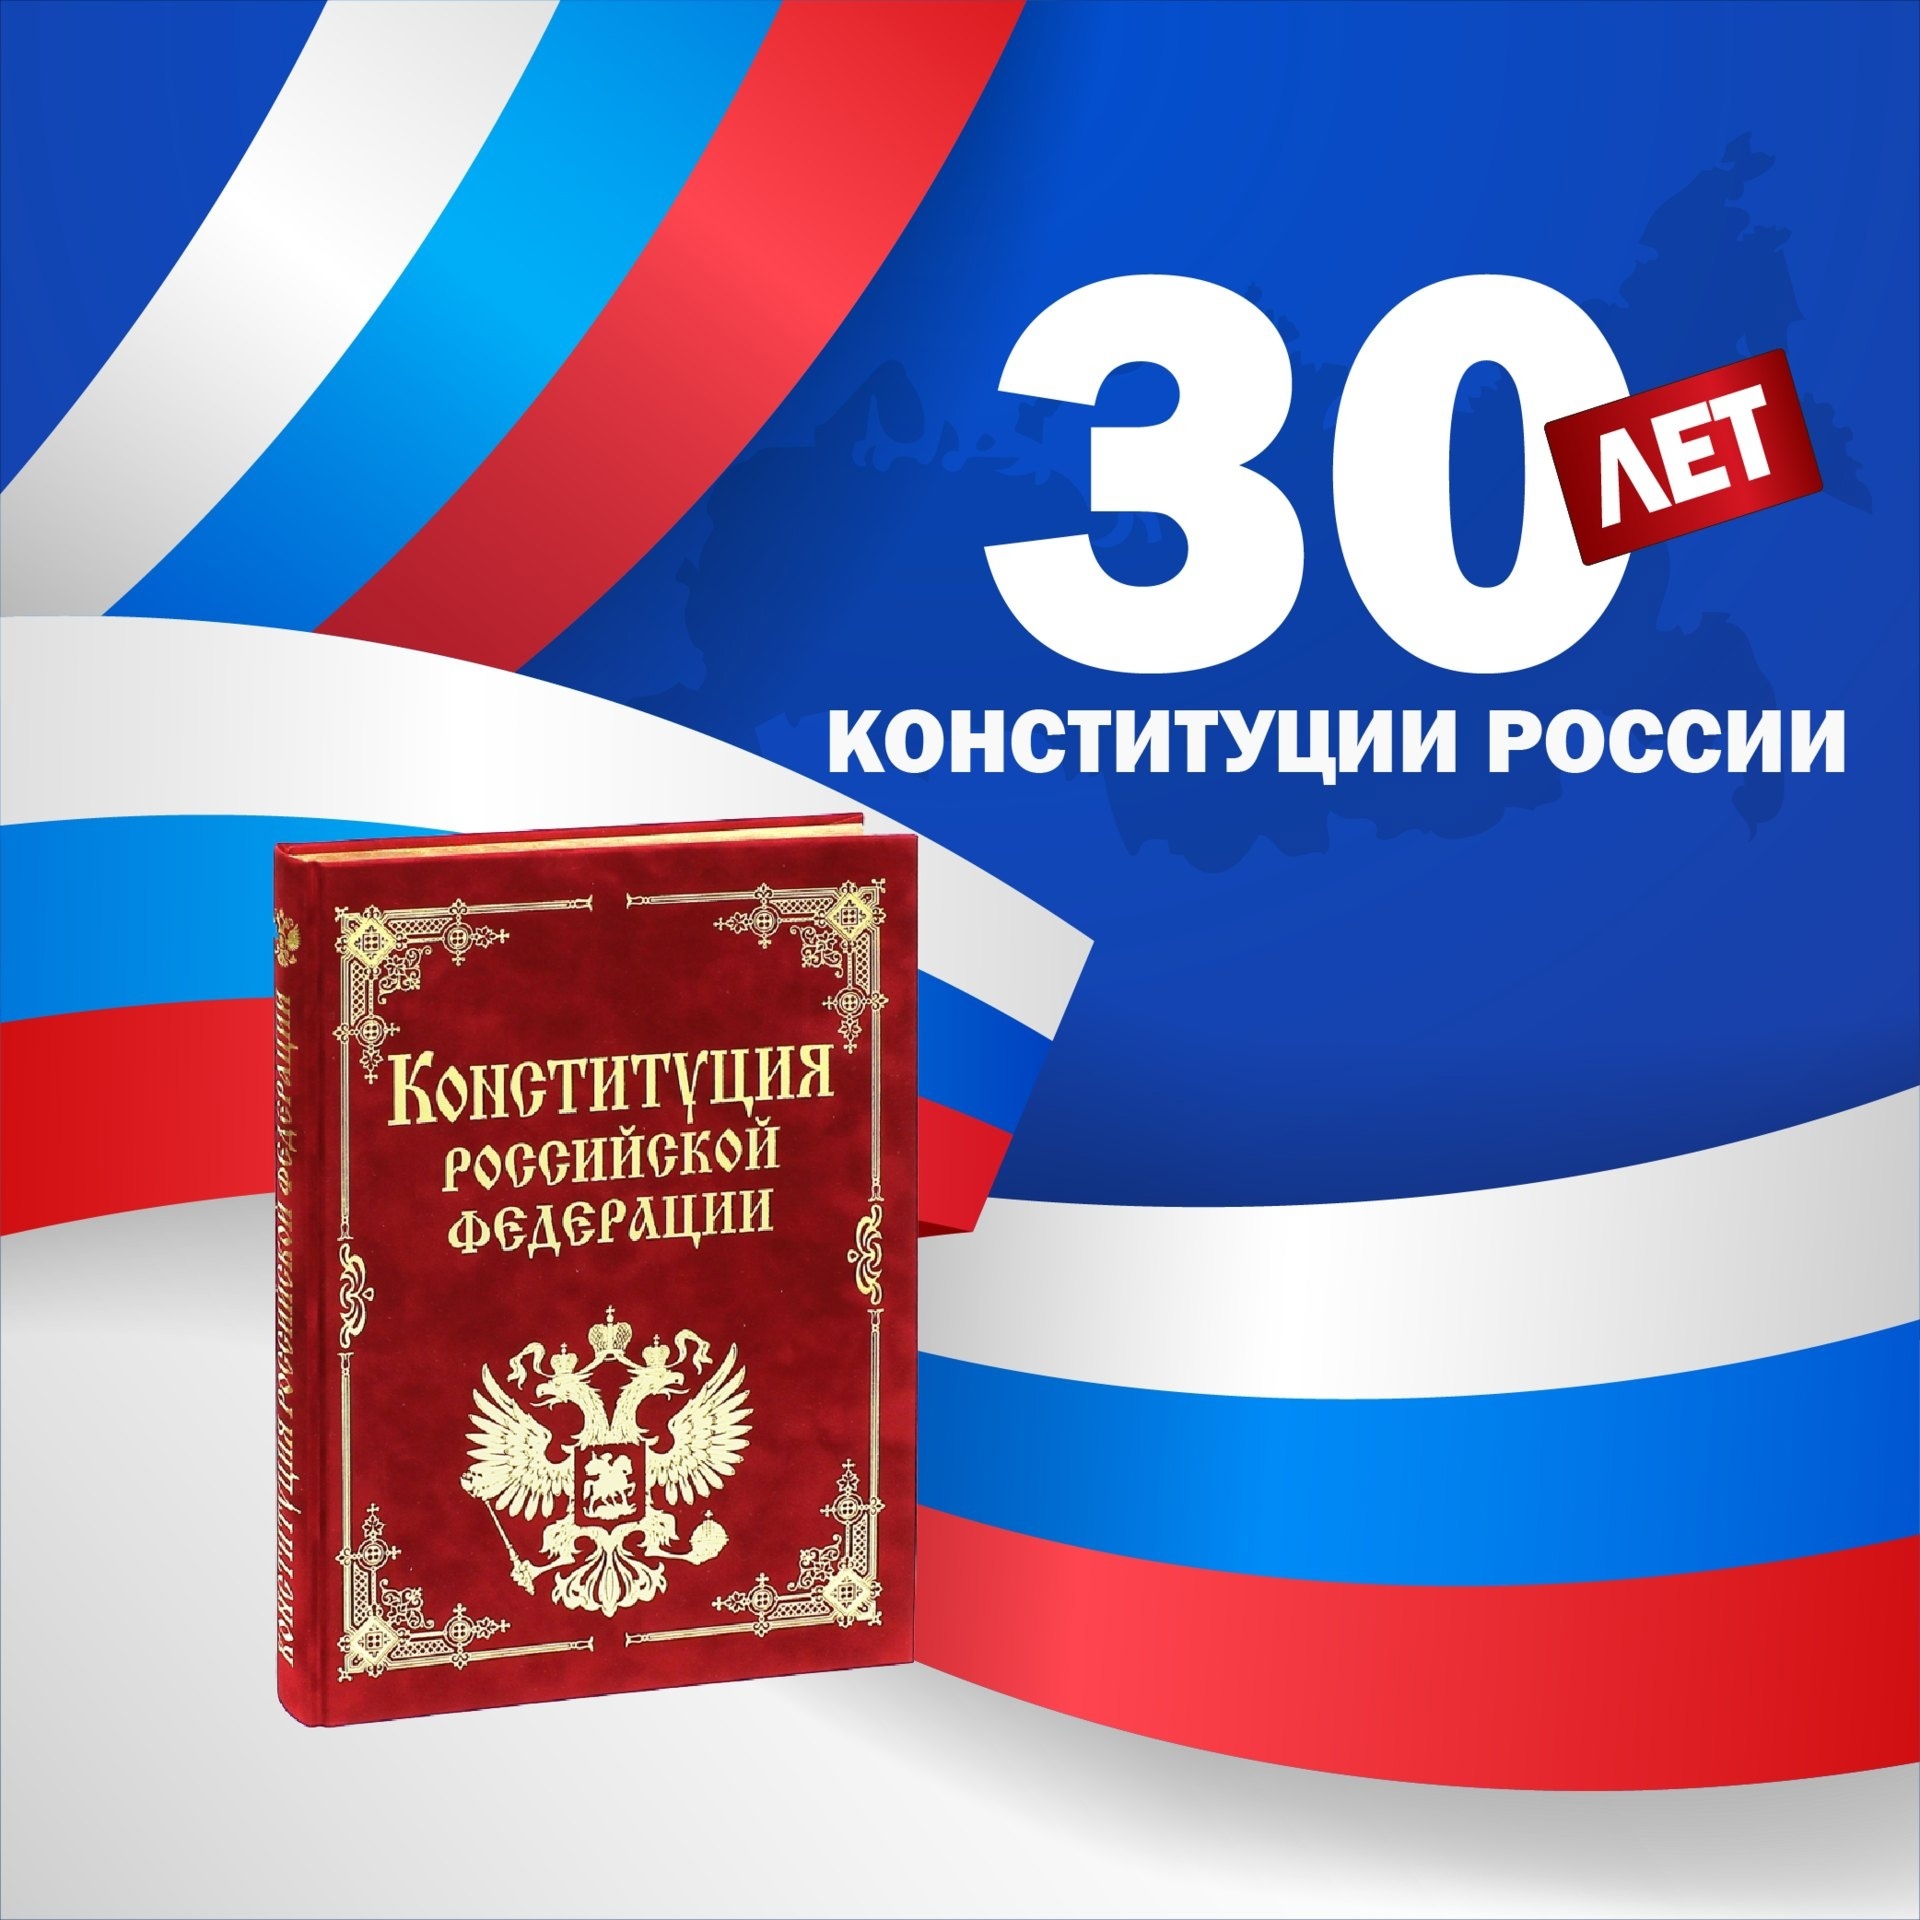 В Матвеево-Курганской сош №3 прошла открытая неделя к 30 летию Конституции РФ